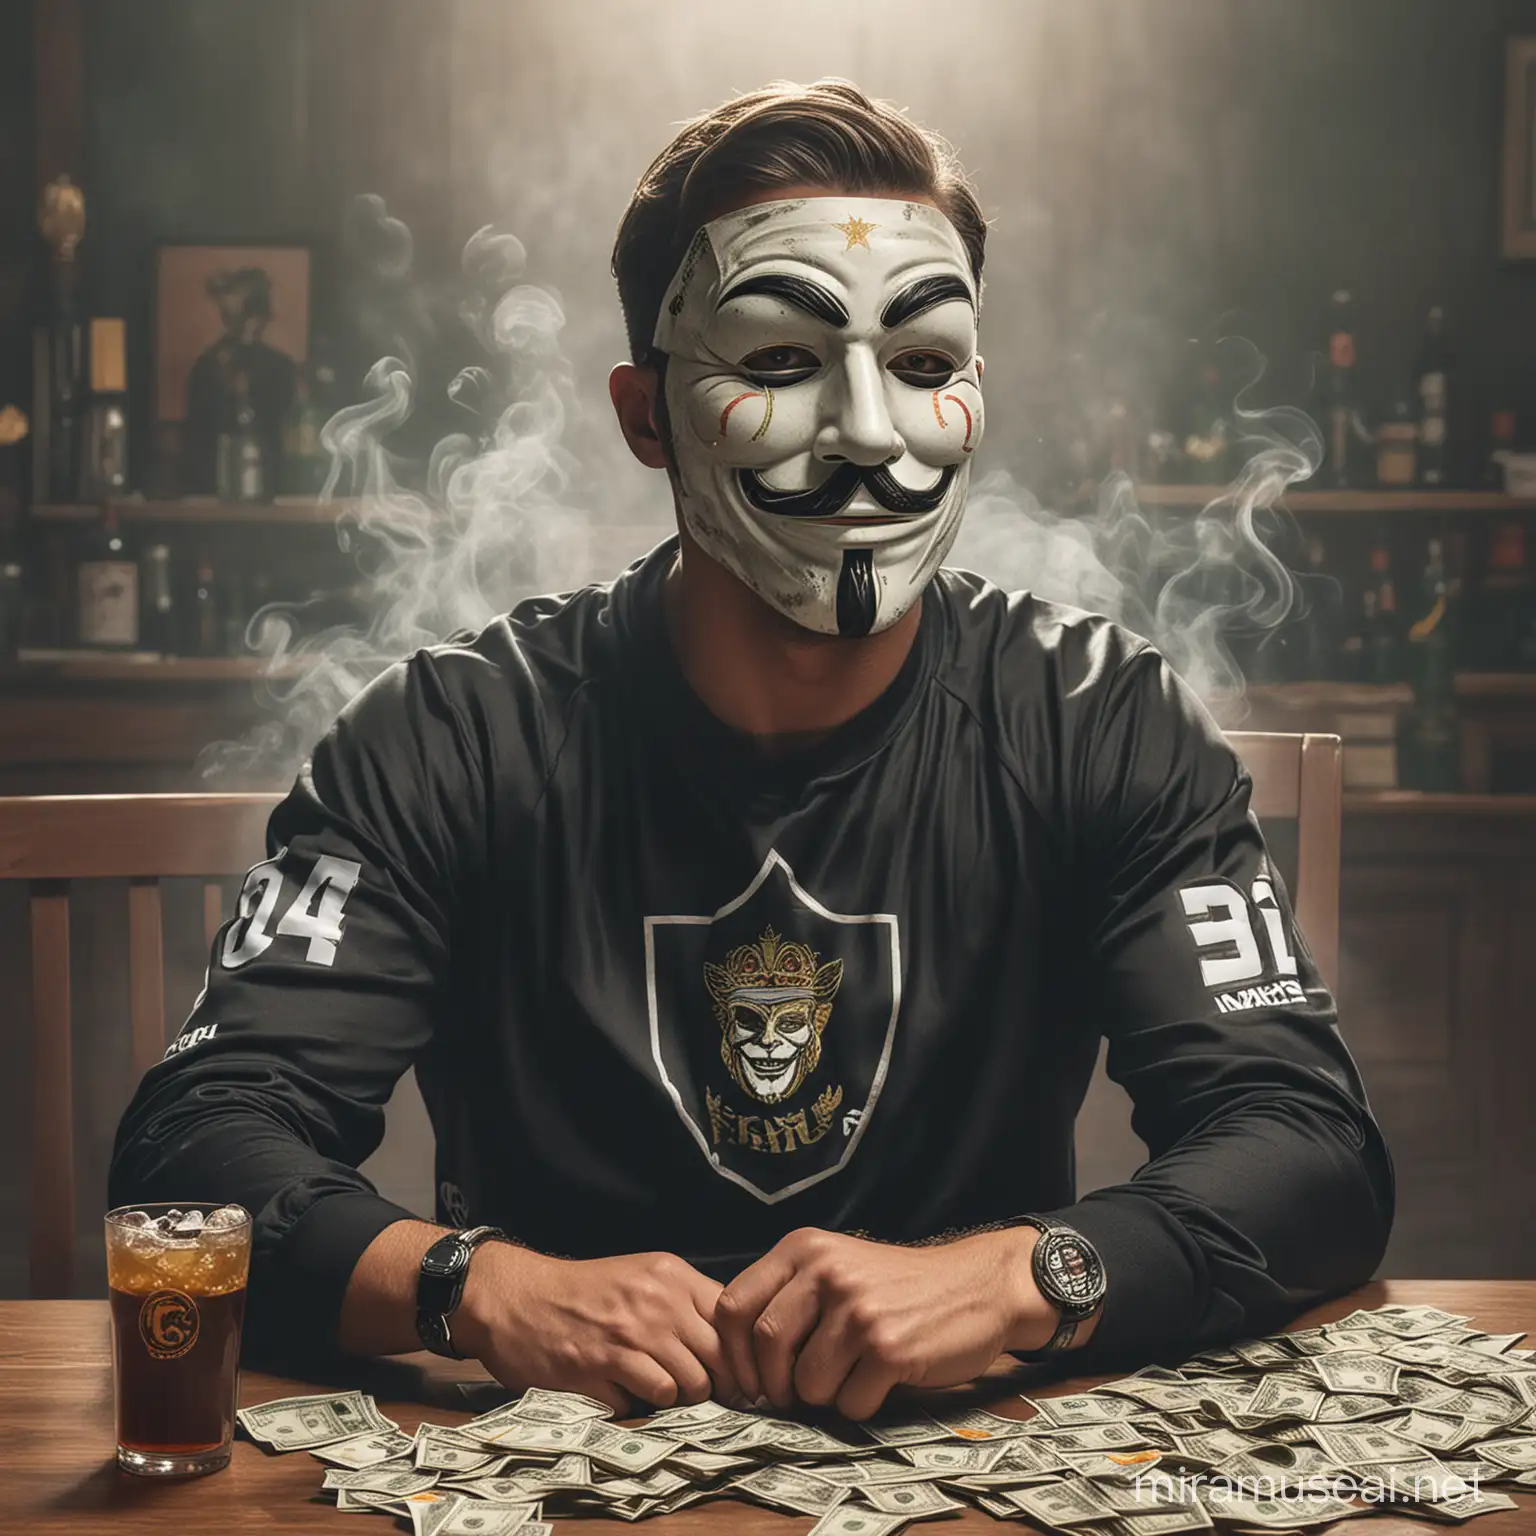 Gere um homem com máscara dos anônimos, com blusa de time e calça da Nike, fumando charuto sentado em uma mesa cheia de dinheiro com bebidas, com logotipo escrito DIAS 